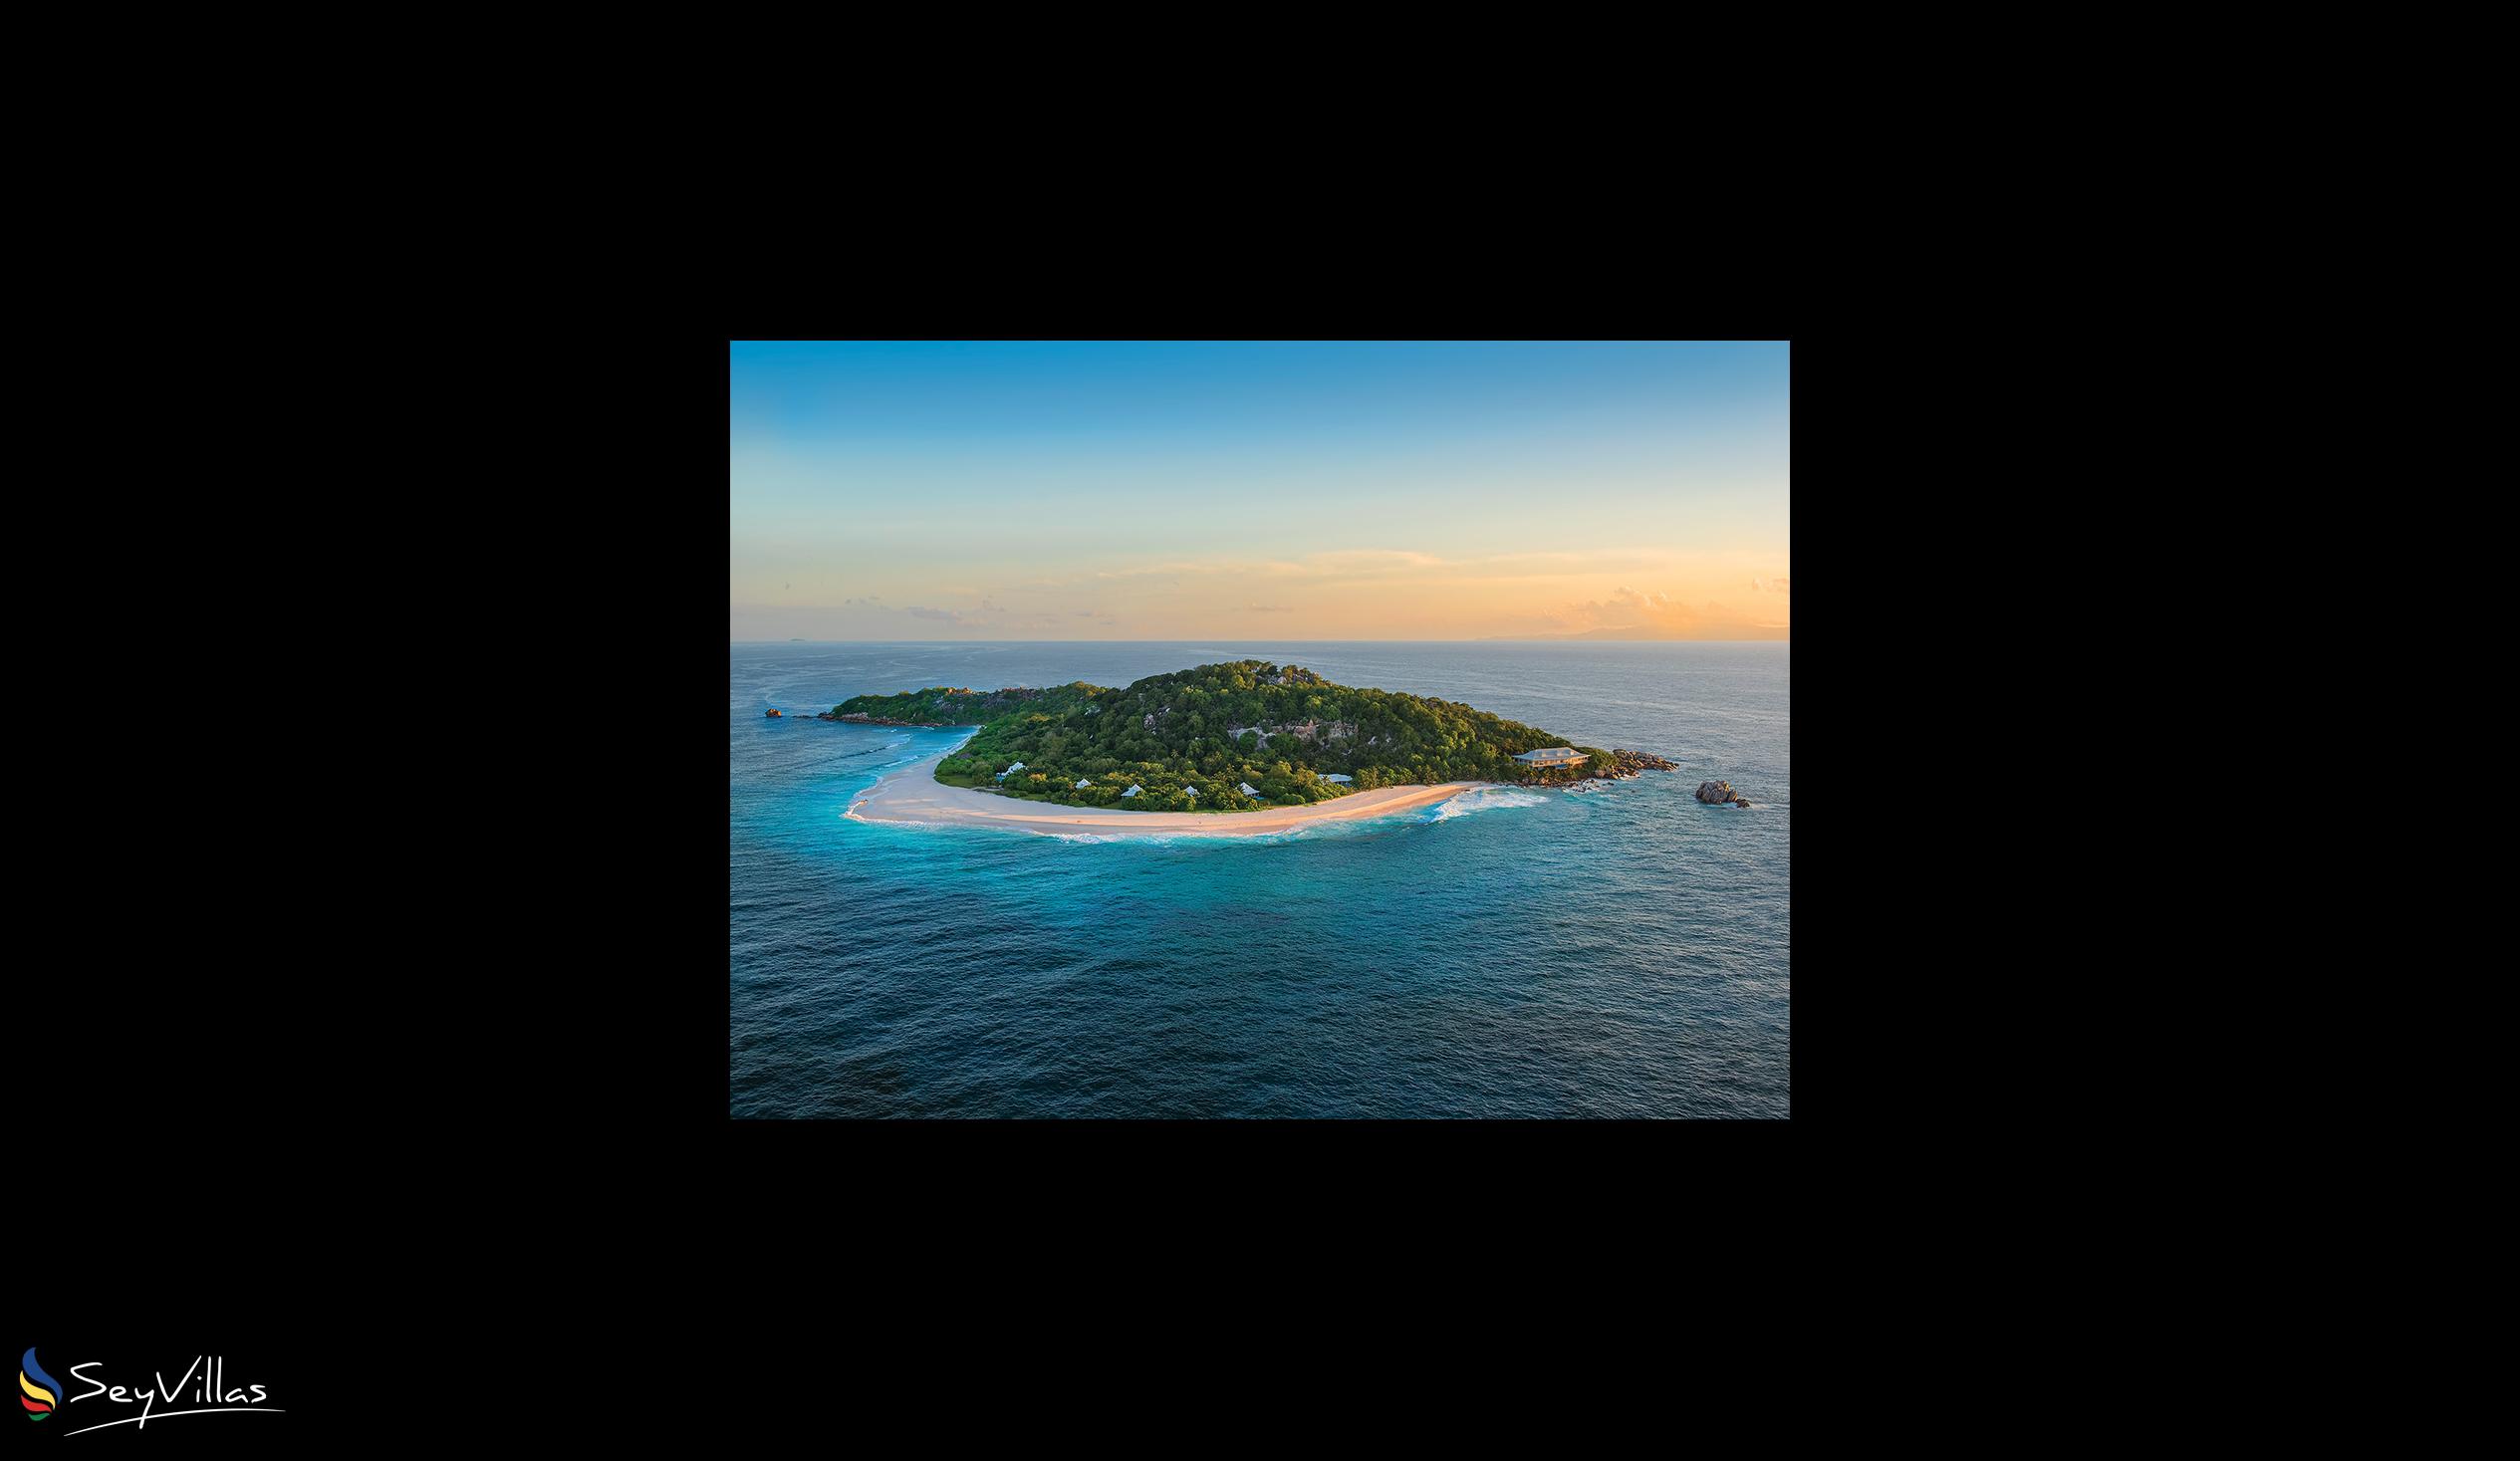 Foto 19: Cousine Island Seychelles - Extérieur - Cousine Island (Seychelles)